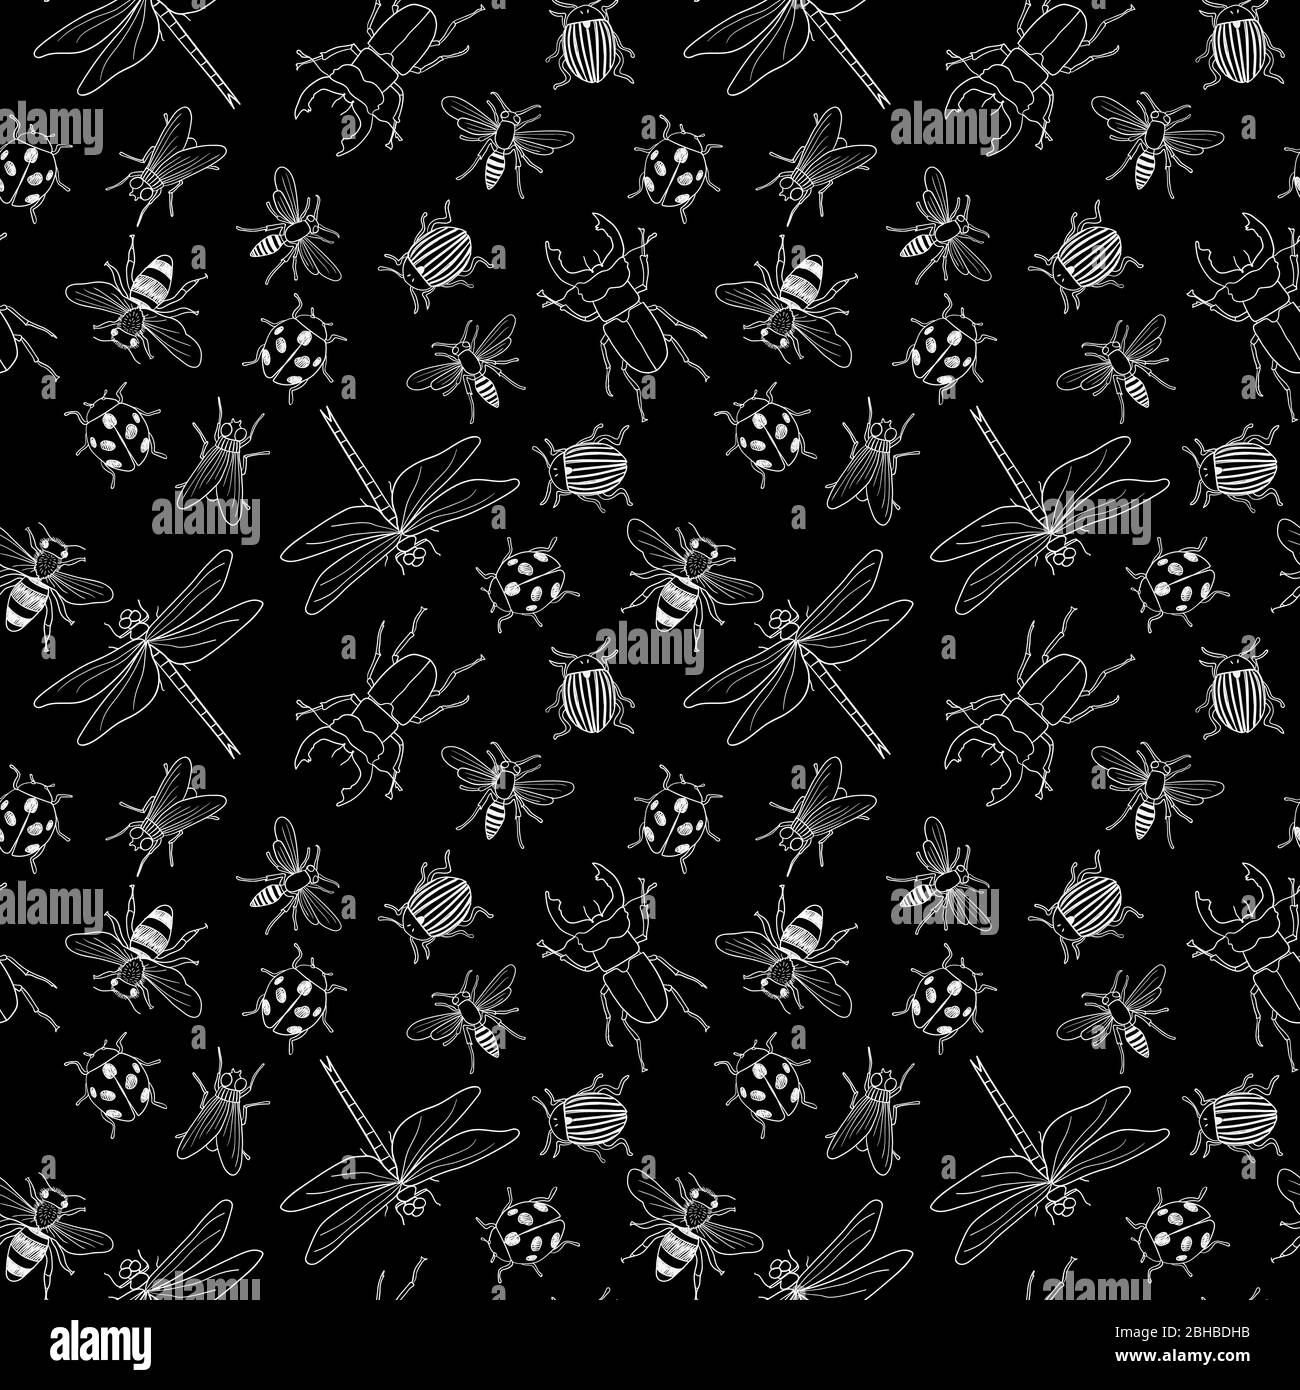 Vektor nahtlose schwarz-weiß Muster von verschiedenen Hand gezeichneten Doodle isolierte Insekten Stock Vektor